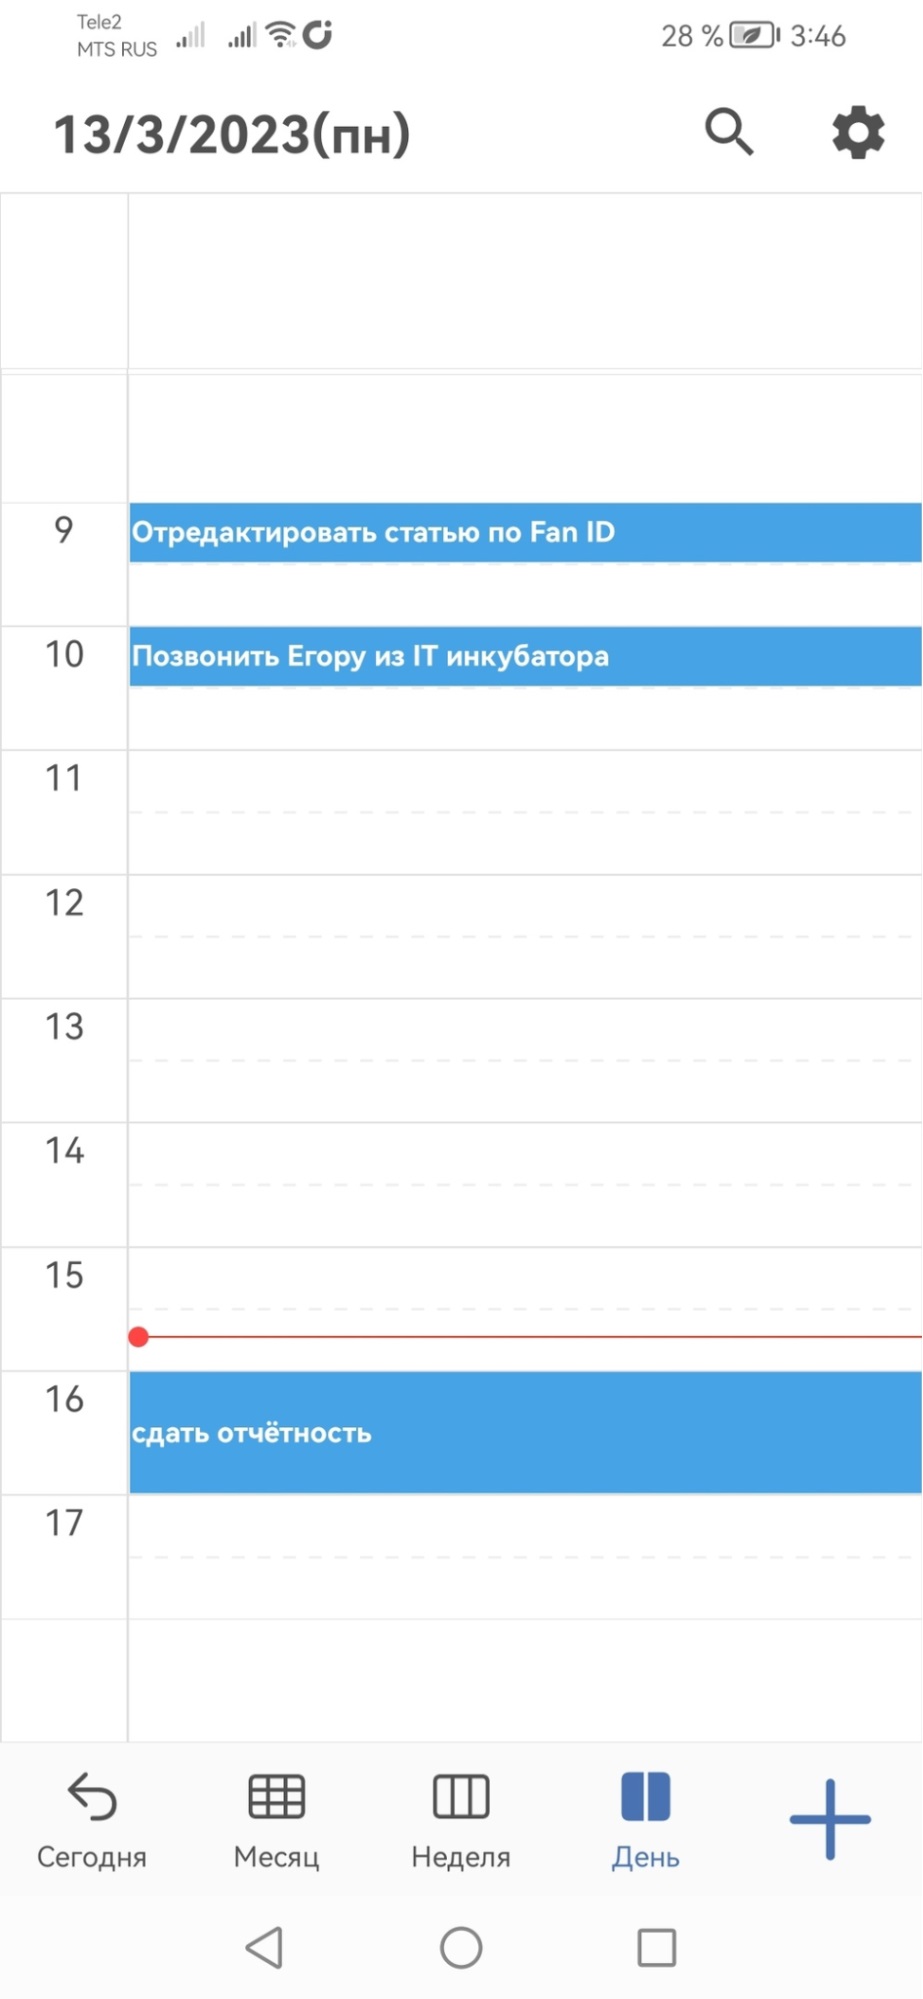 Мой календарь — Дневной планер